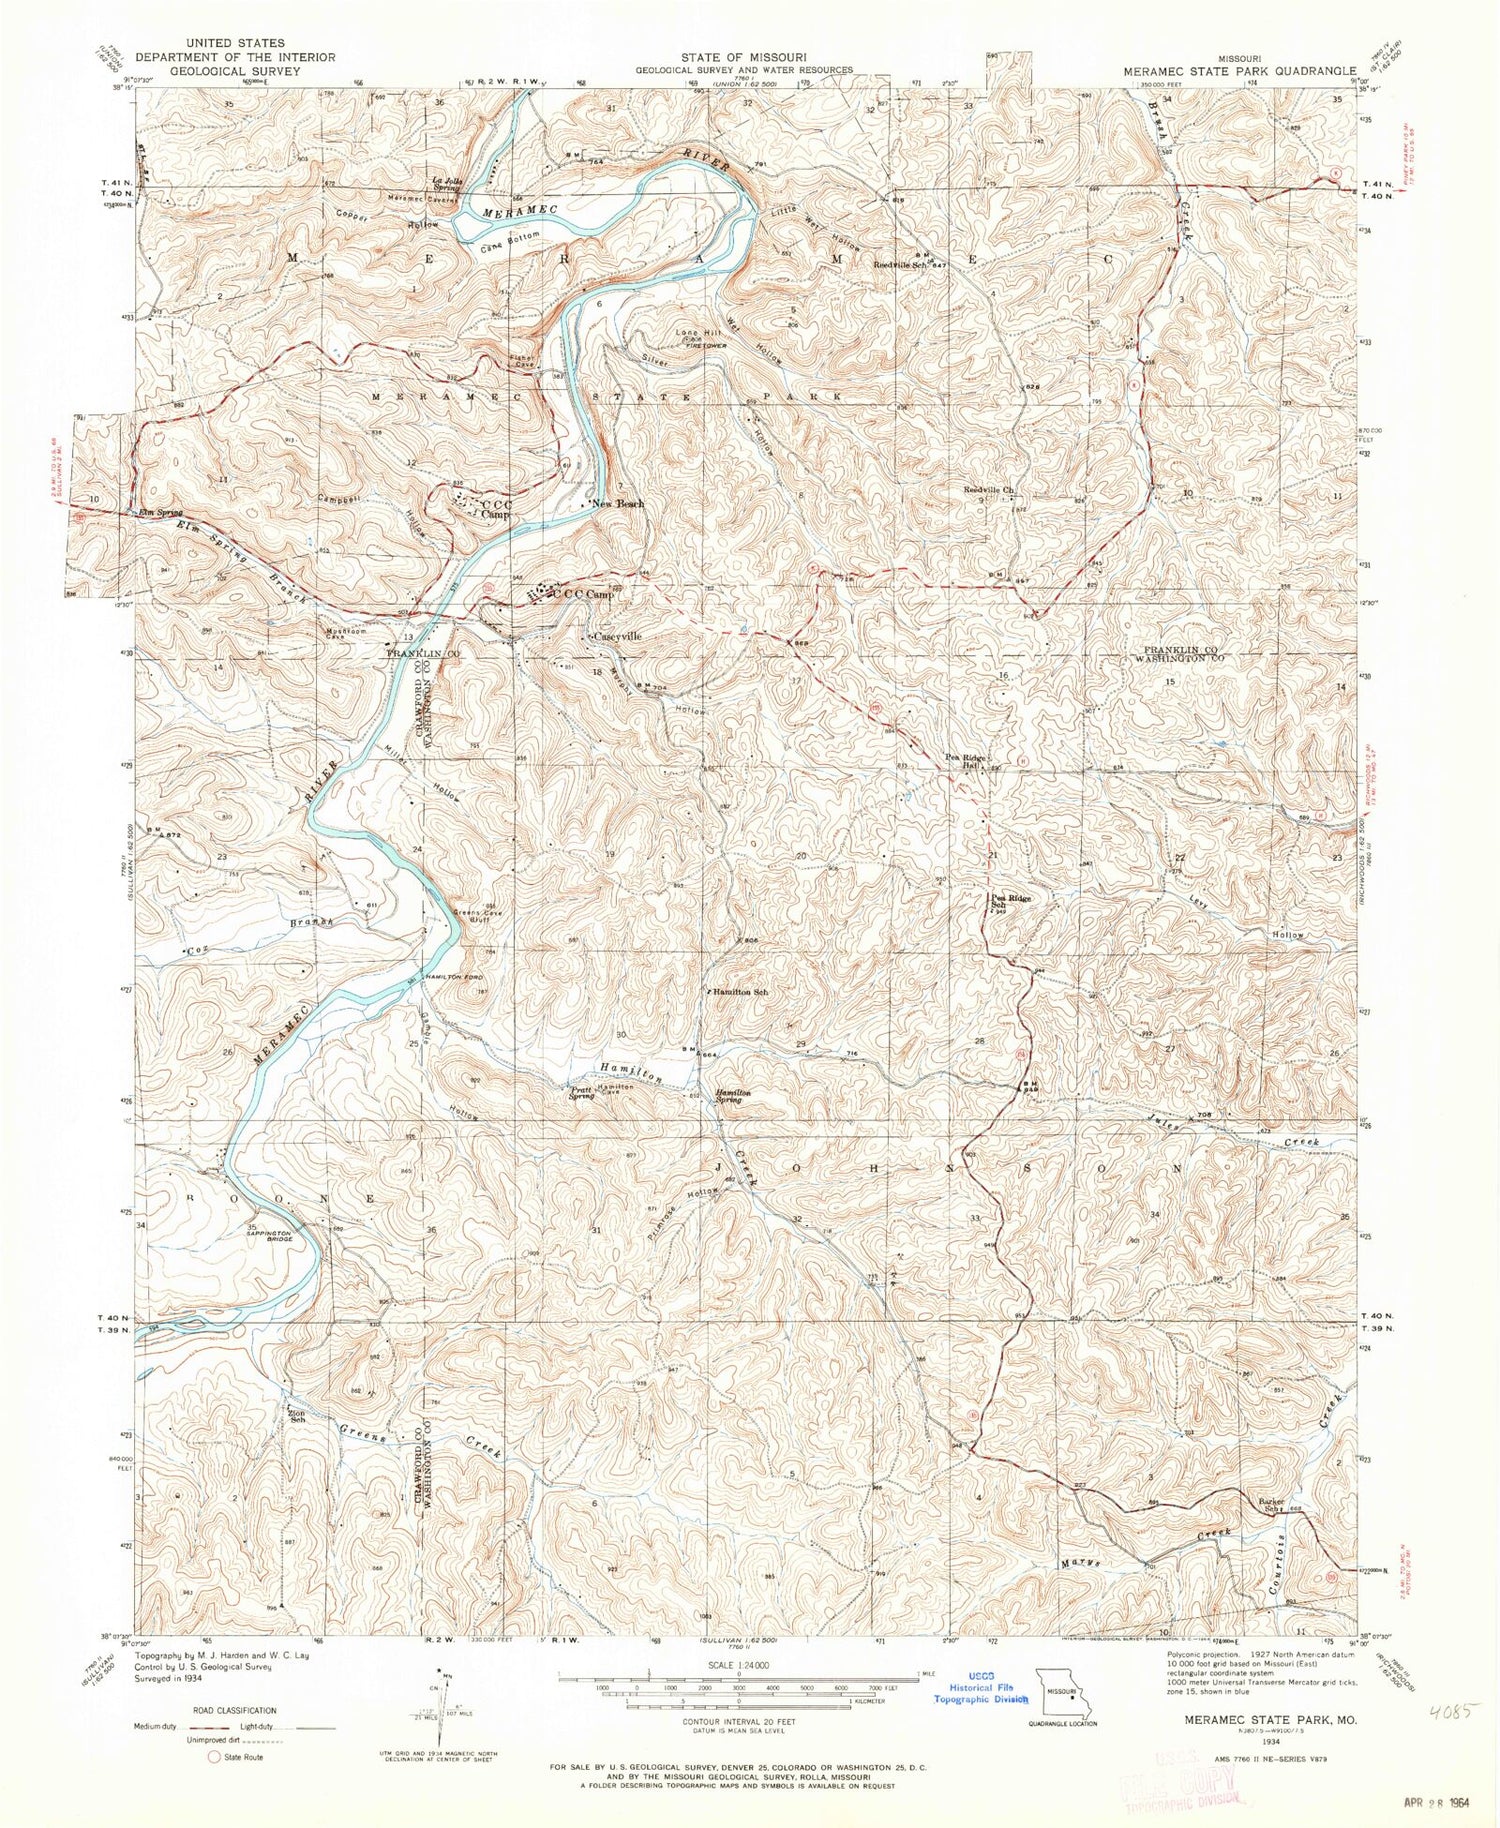 Classic USGS Meramec State Park Missouri 7.5'x7.5' Topo Map Image